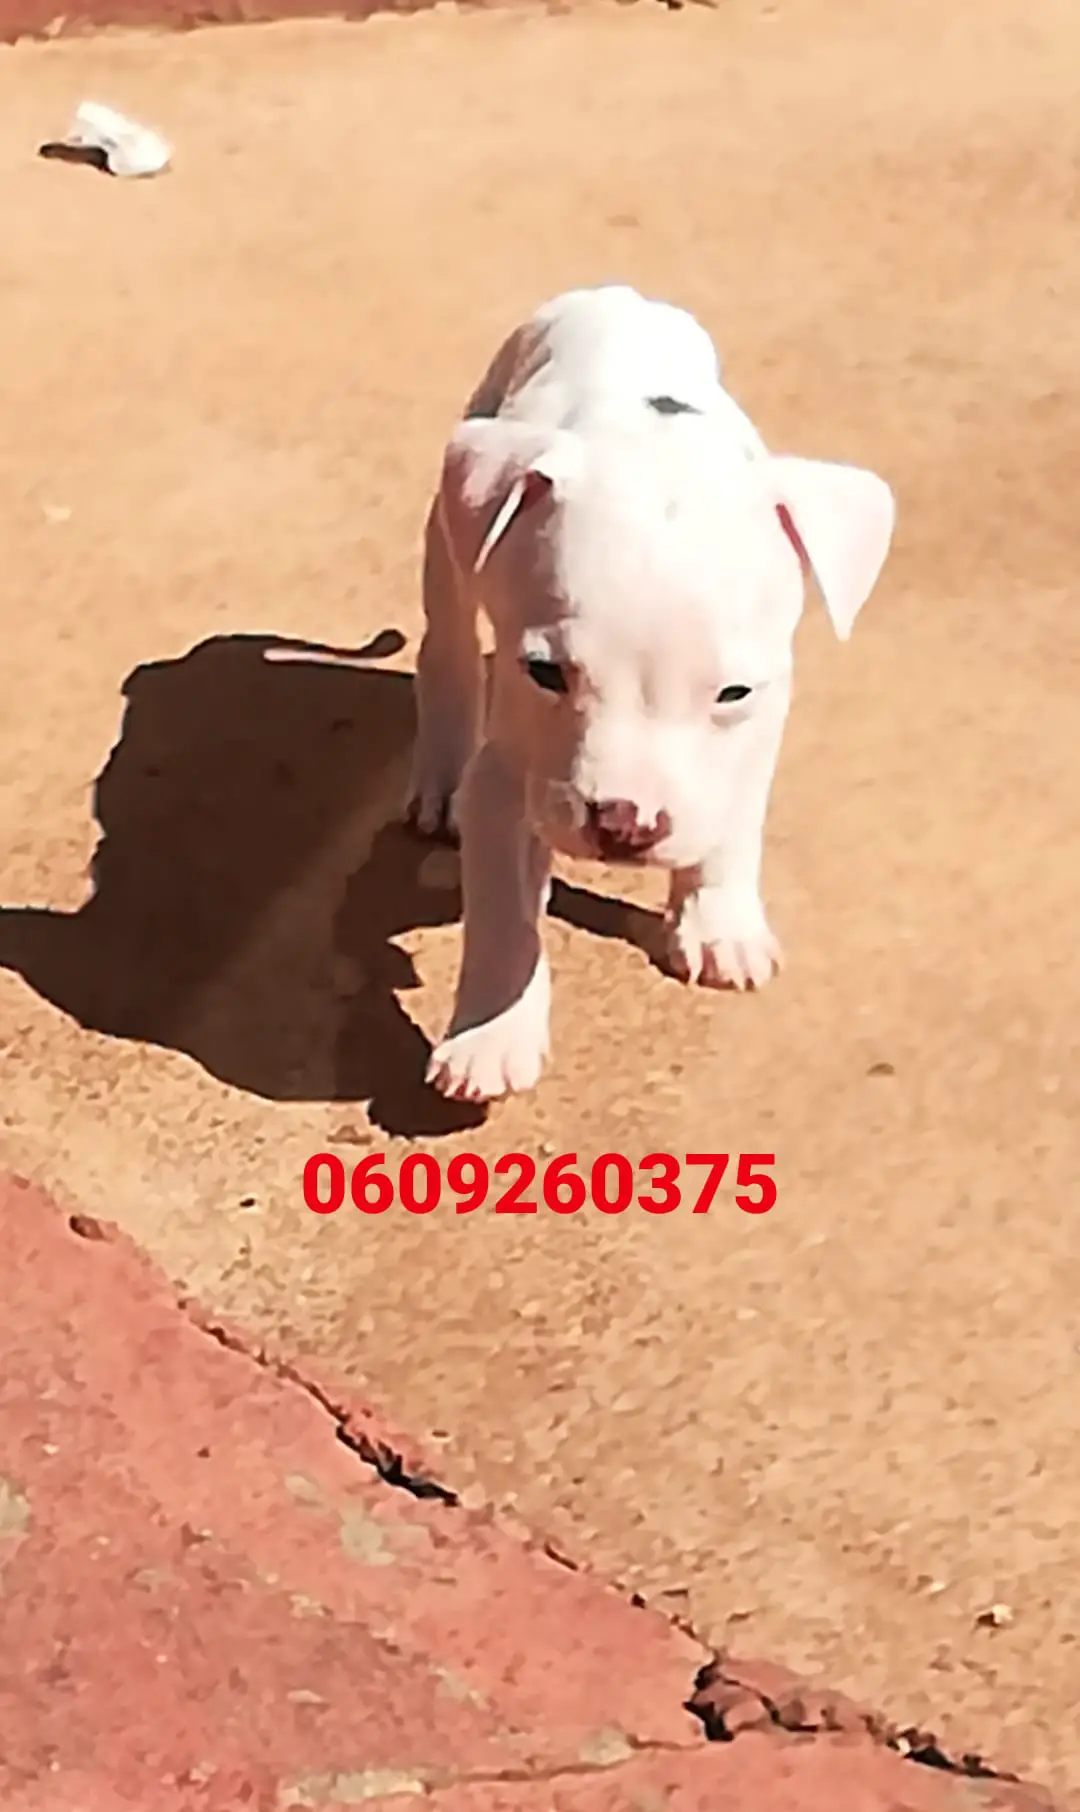 Pitbull Puppies in Pretoria (13/04/2021)